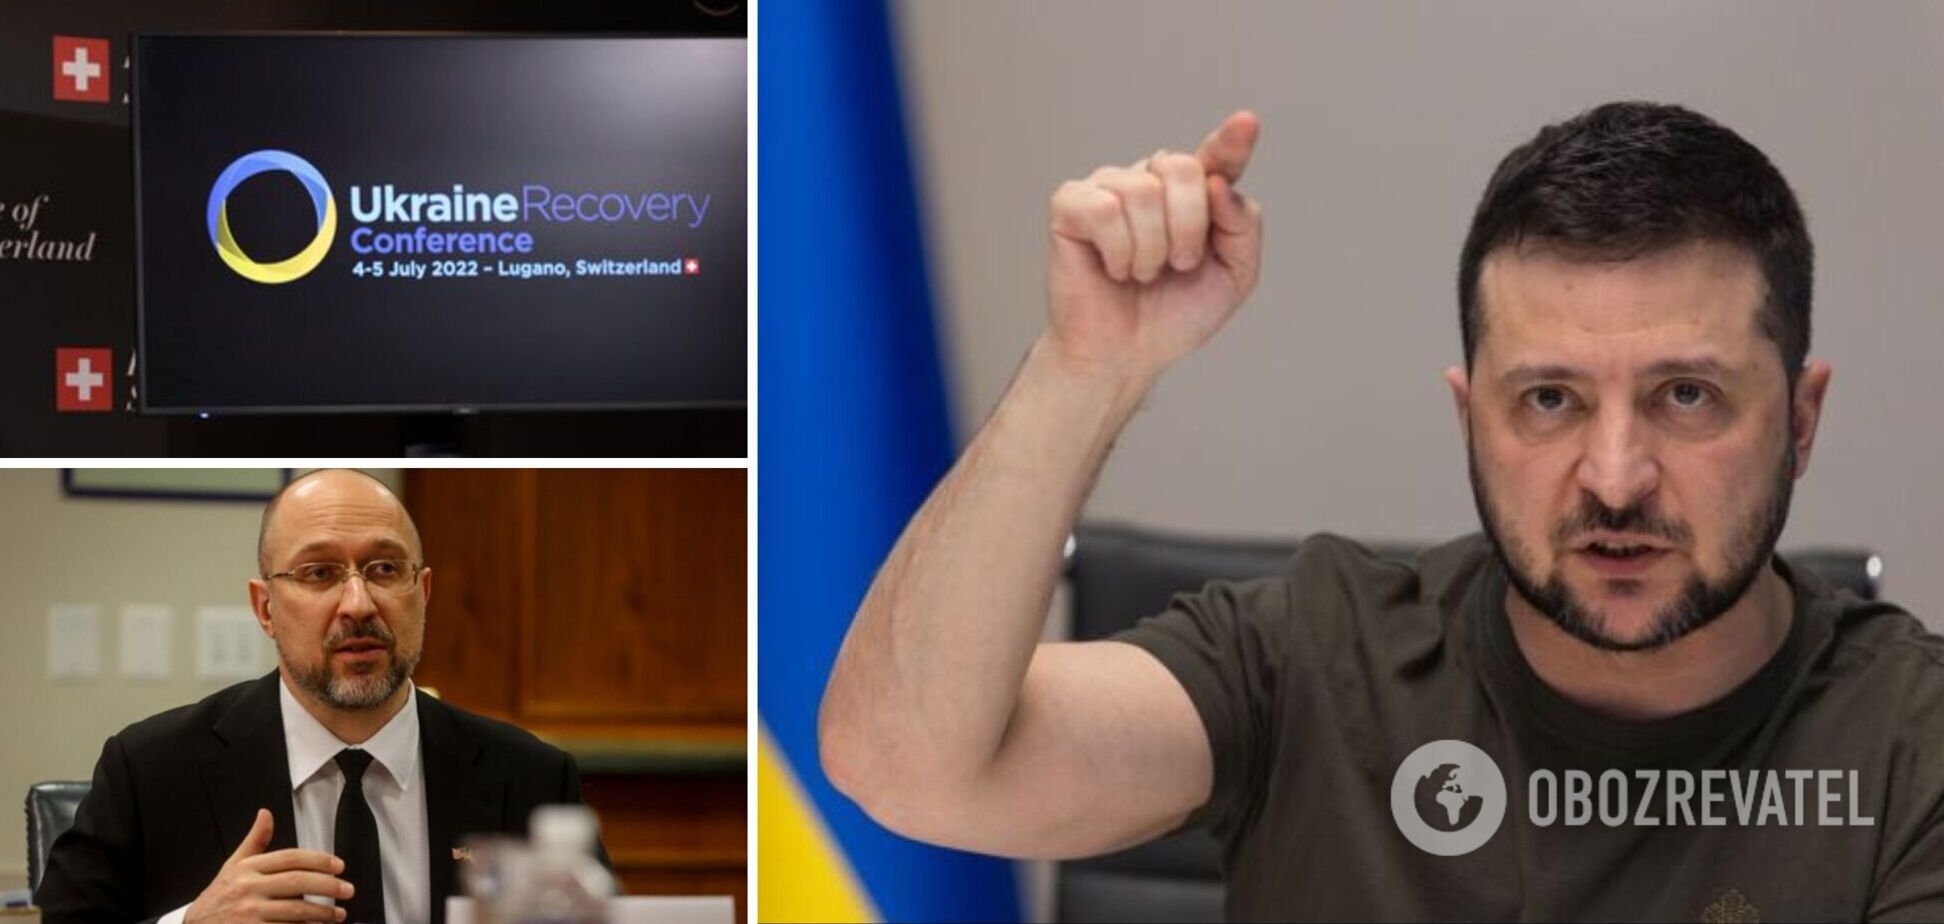 Стало известно количество украинских чиновников, присутствовавших на конференции в Лугано